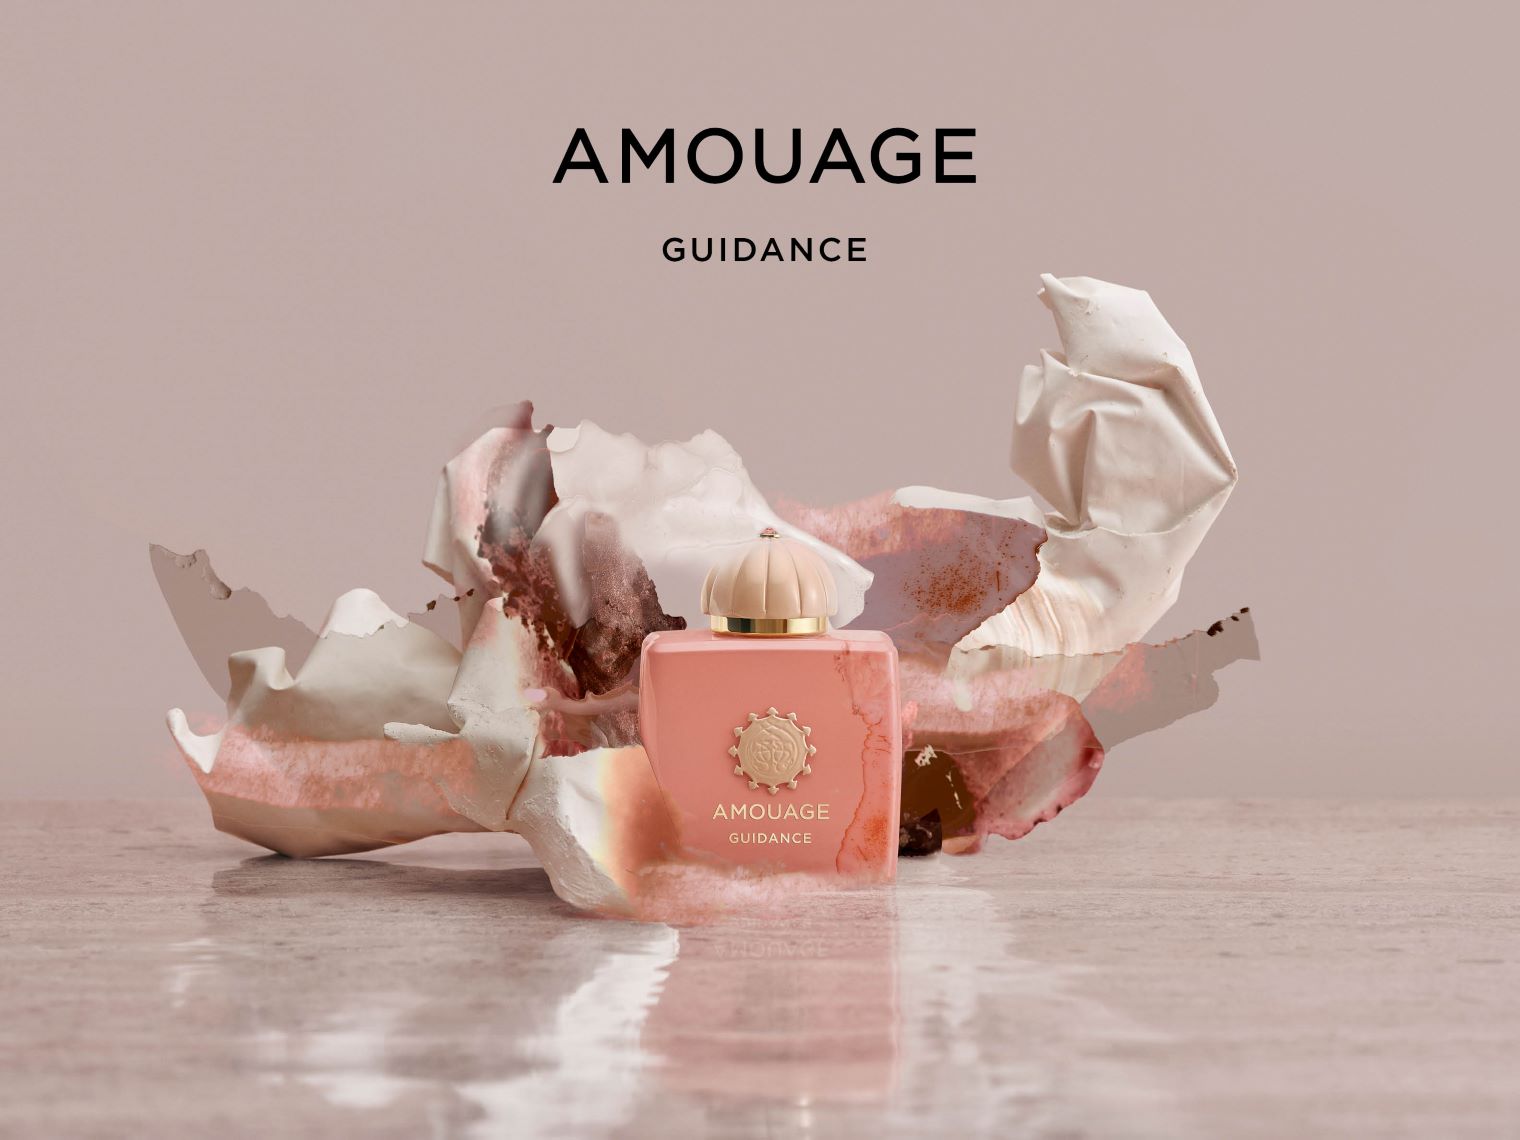 Amouage Brandshop